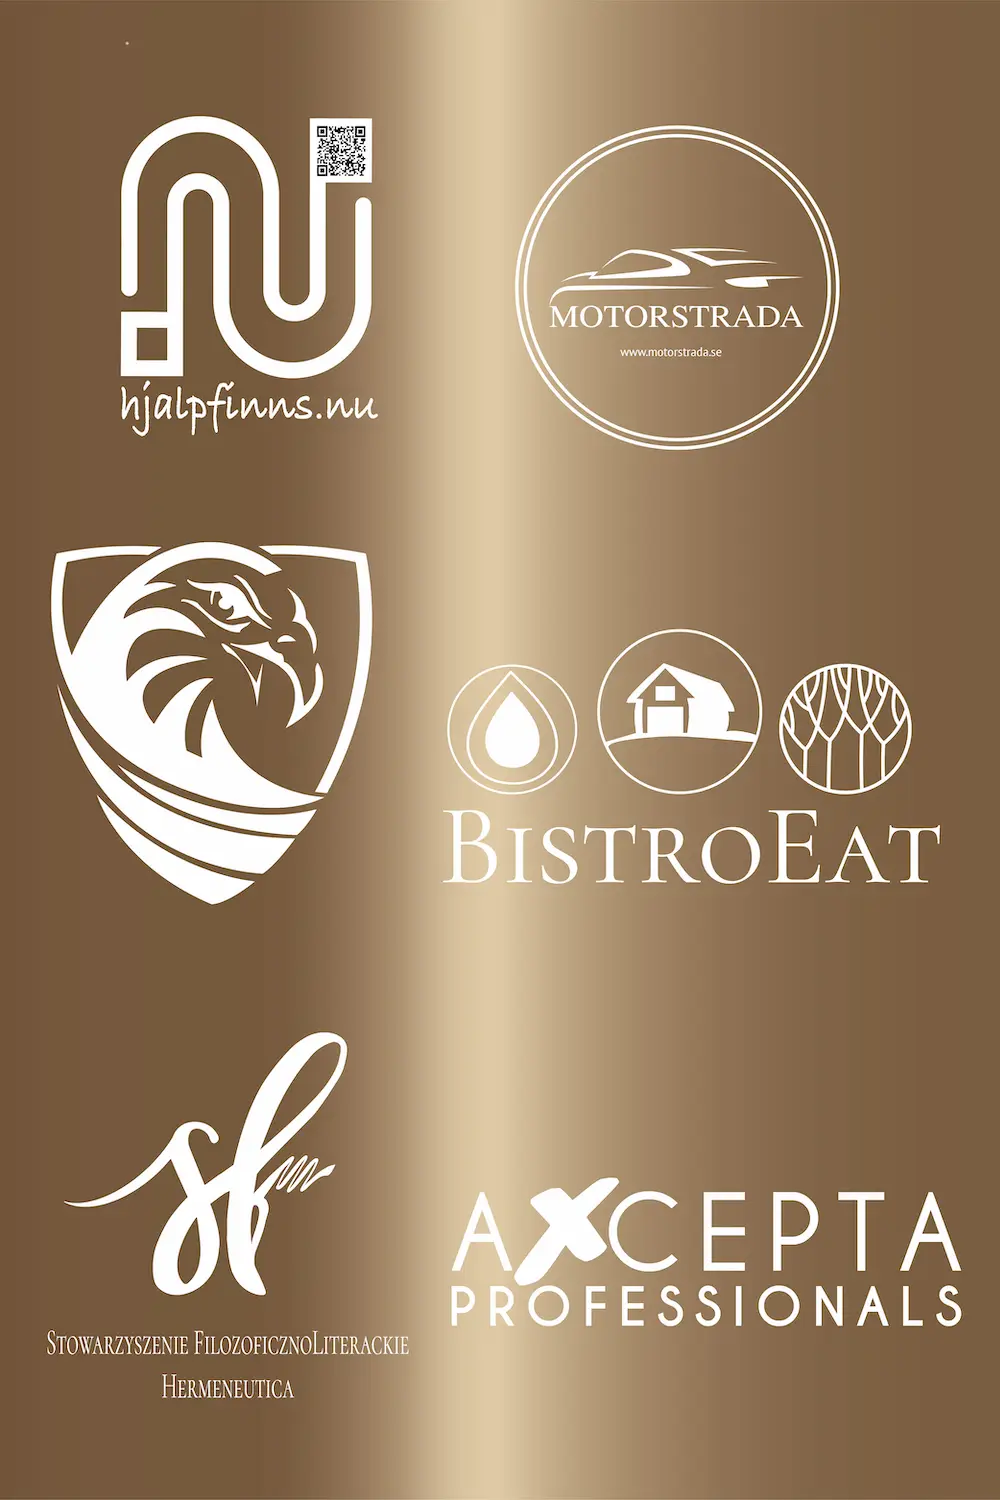 PORTFOLIO Logotypes by Kamila Mankiewicz